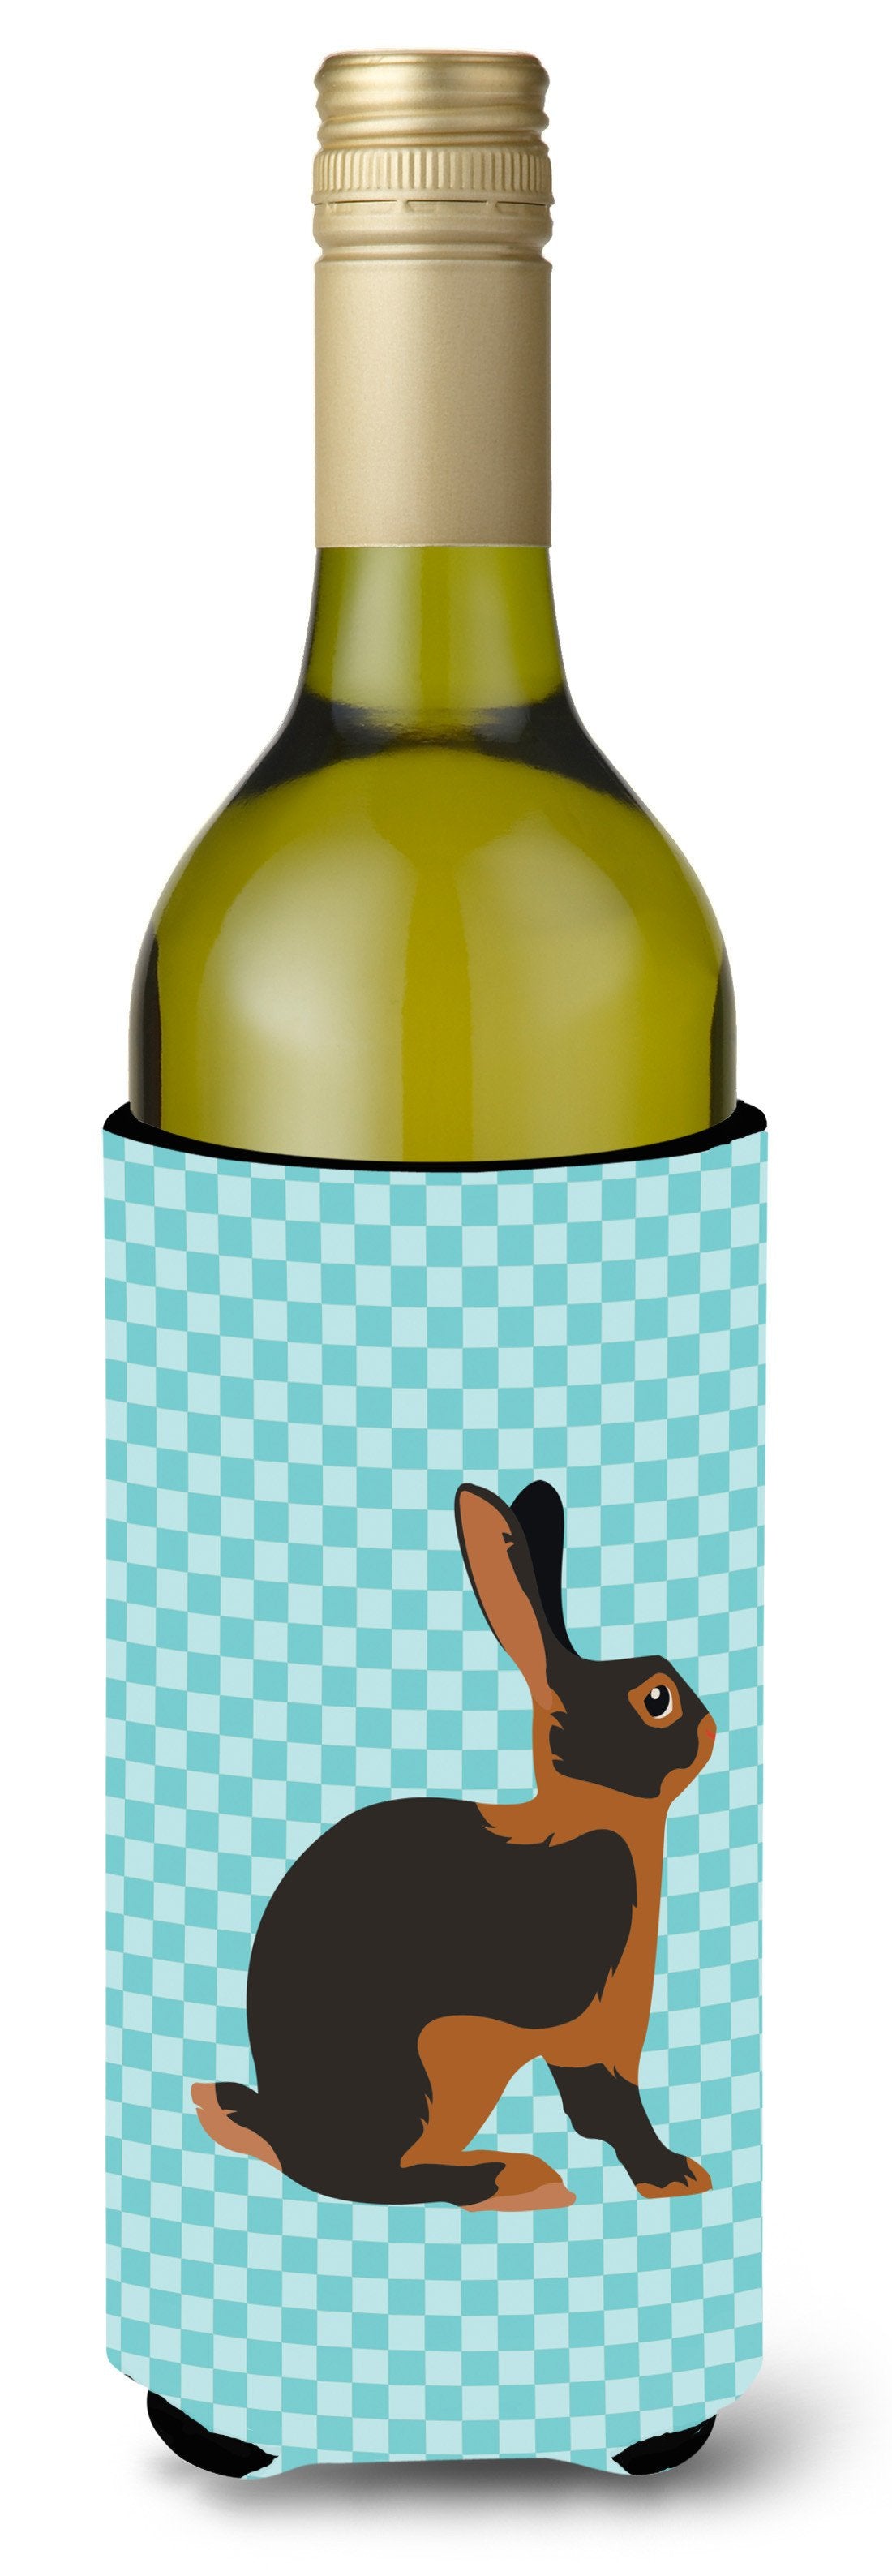 Tan Rabbit Blue Check Wine Bottle Beverge Insulator Hugger BB8137LITERK by Caroline's Treasures